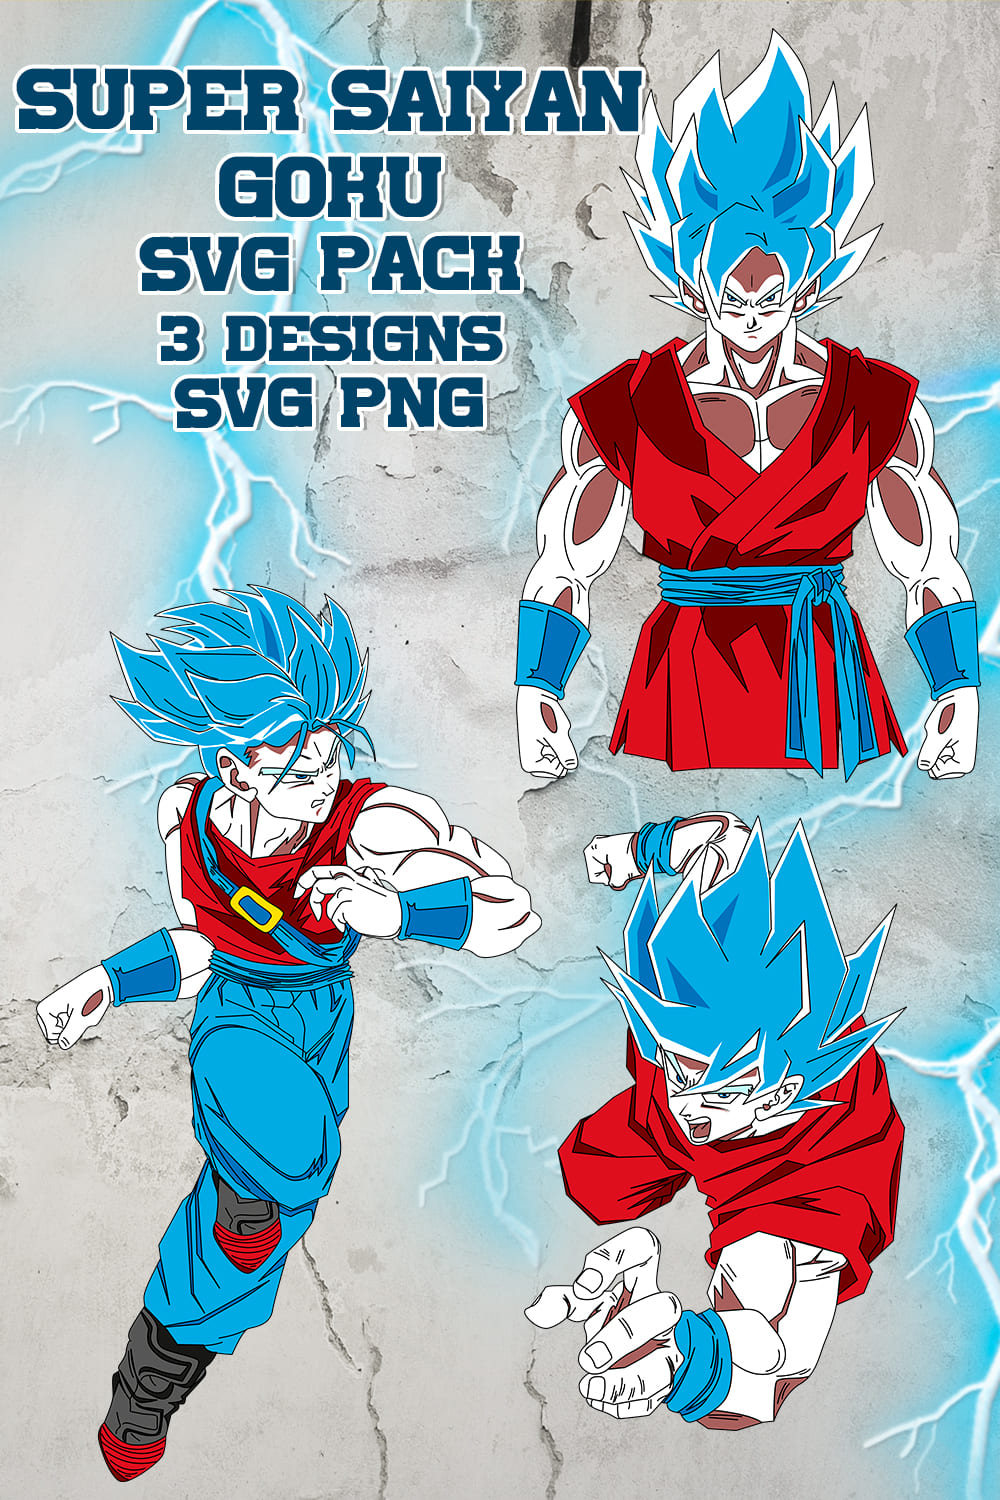 3 deign of the Super Saiyan Goku SVG.